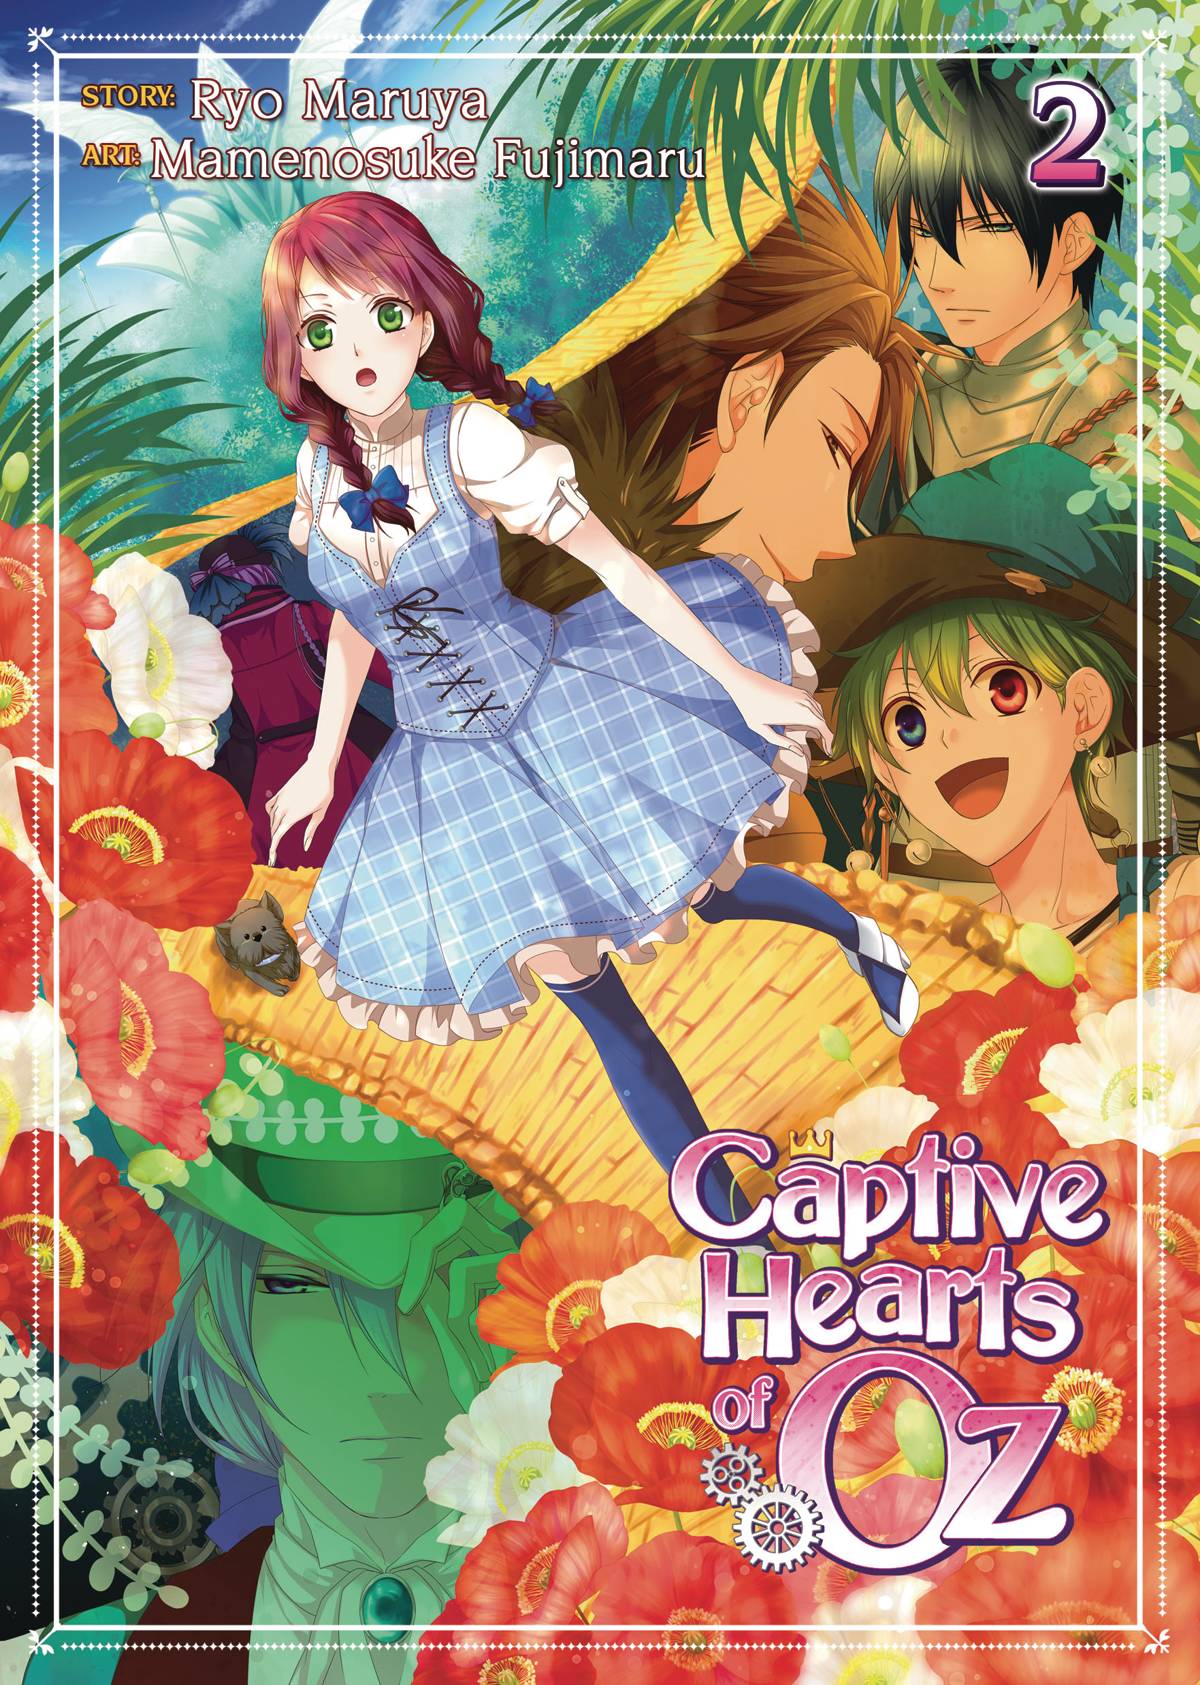 Captive Hearts of Oz Manga Volume 3